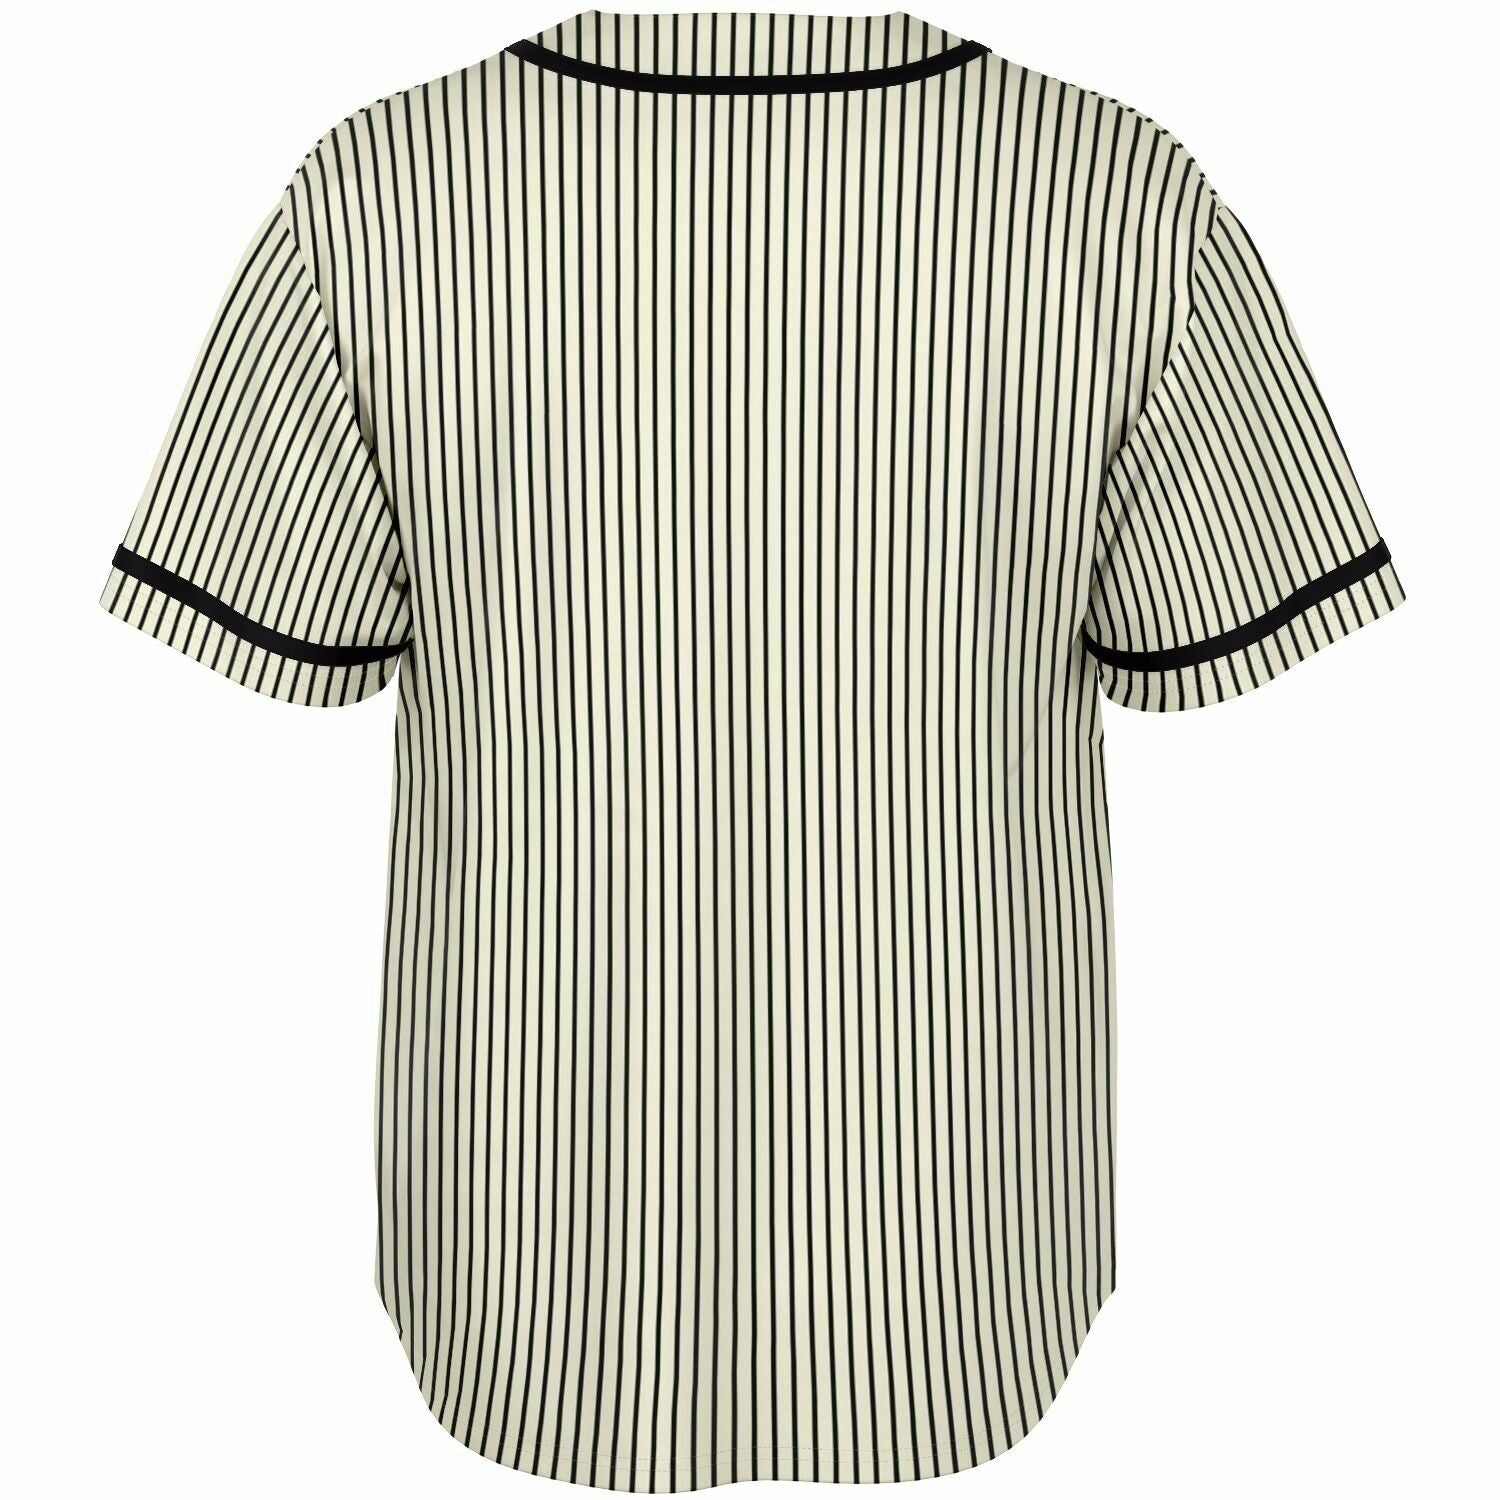 Retro Style Baseball Jersey, striped jersey